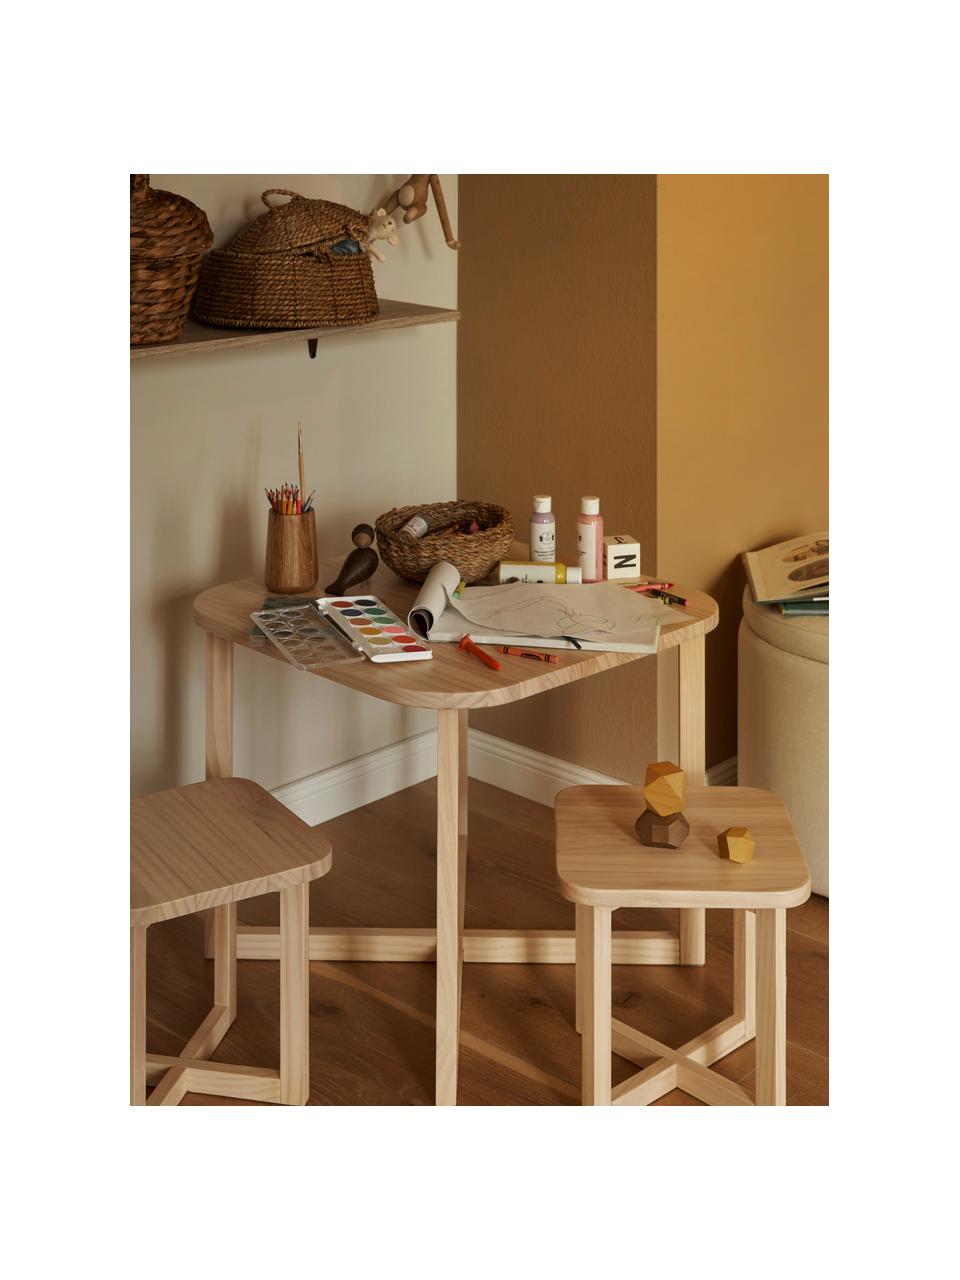 Kindertisch-Set Benny aus Holz, 3-tlg., FSC-zertifiziertes Kiefernholz, Kiefernholz, Set mit verschiedenen Größen